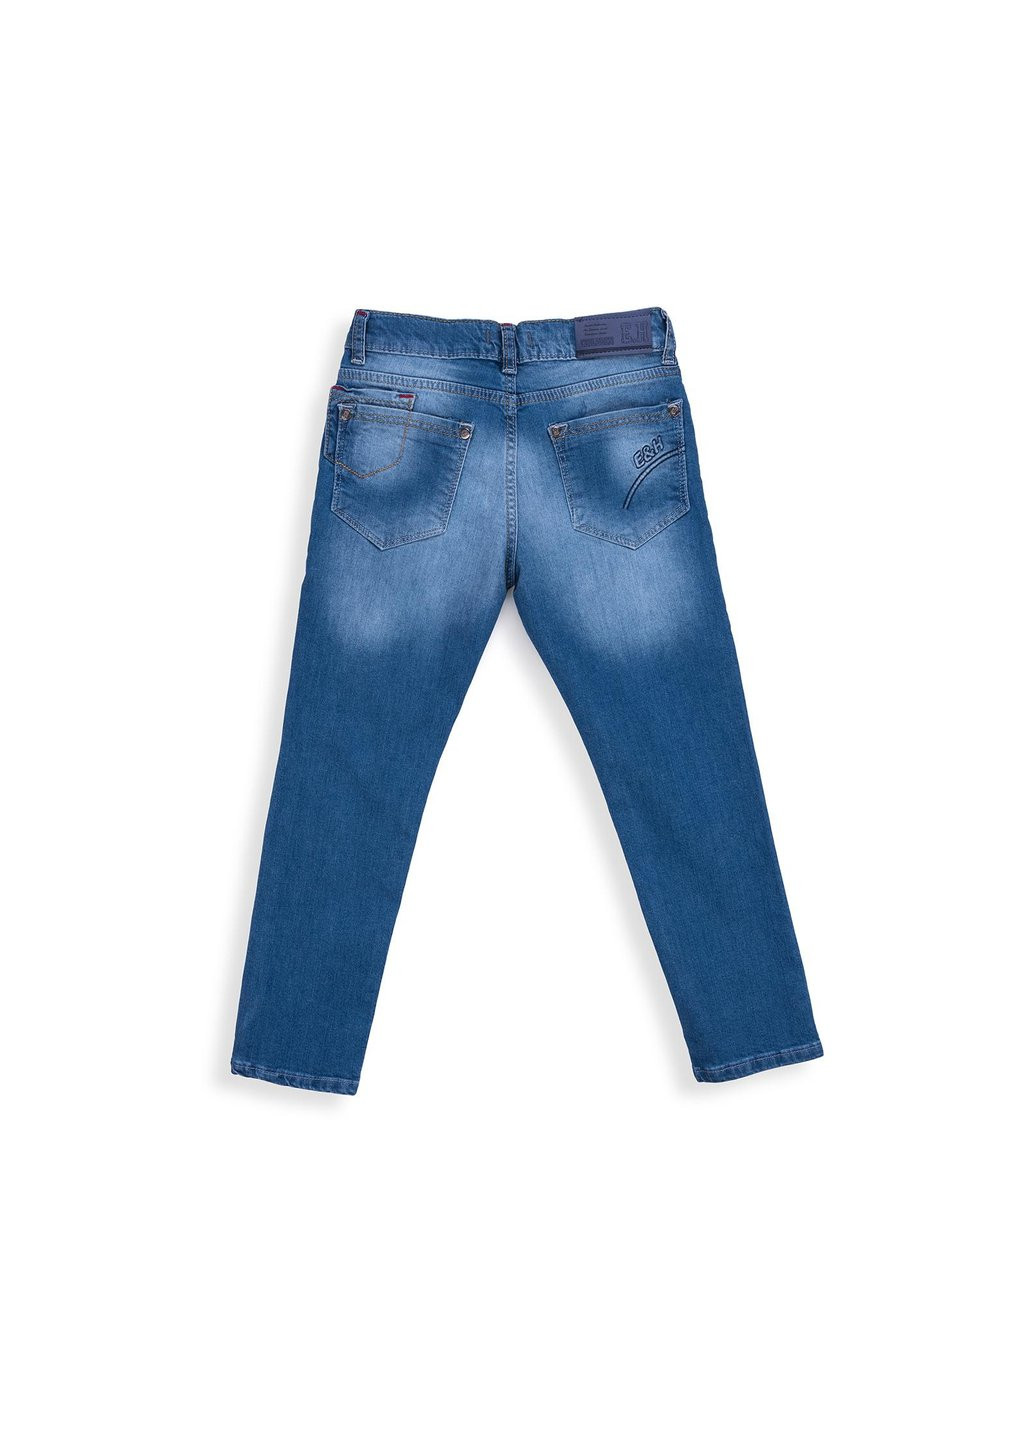 Голубые демисезонные джинсы зауженые (20123-116b-blue) E&H